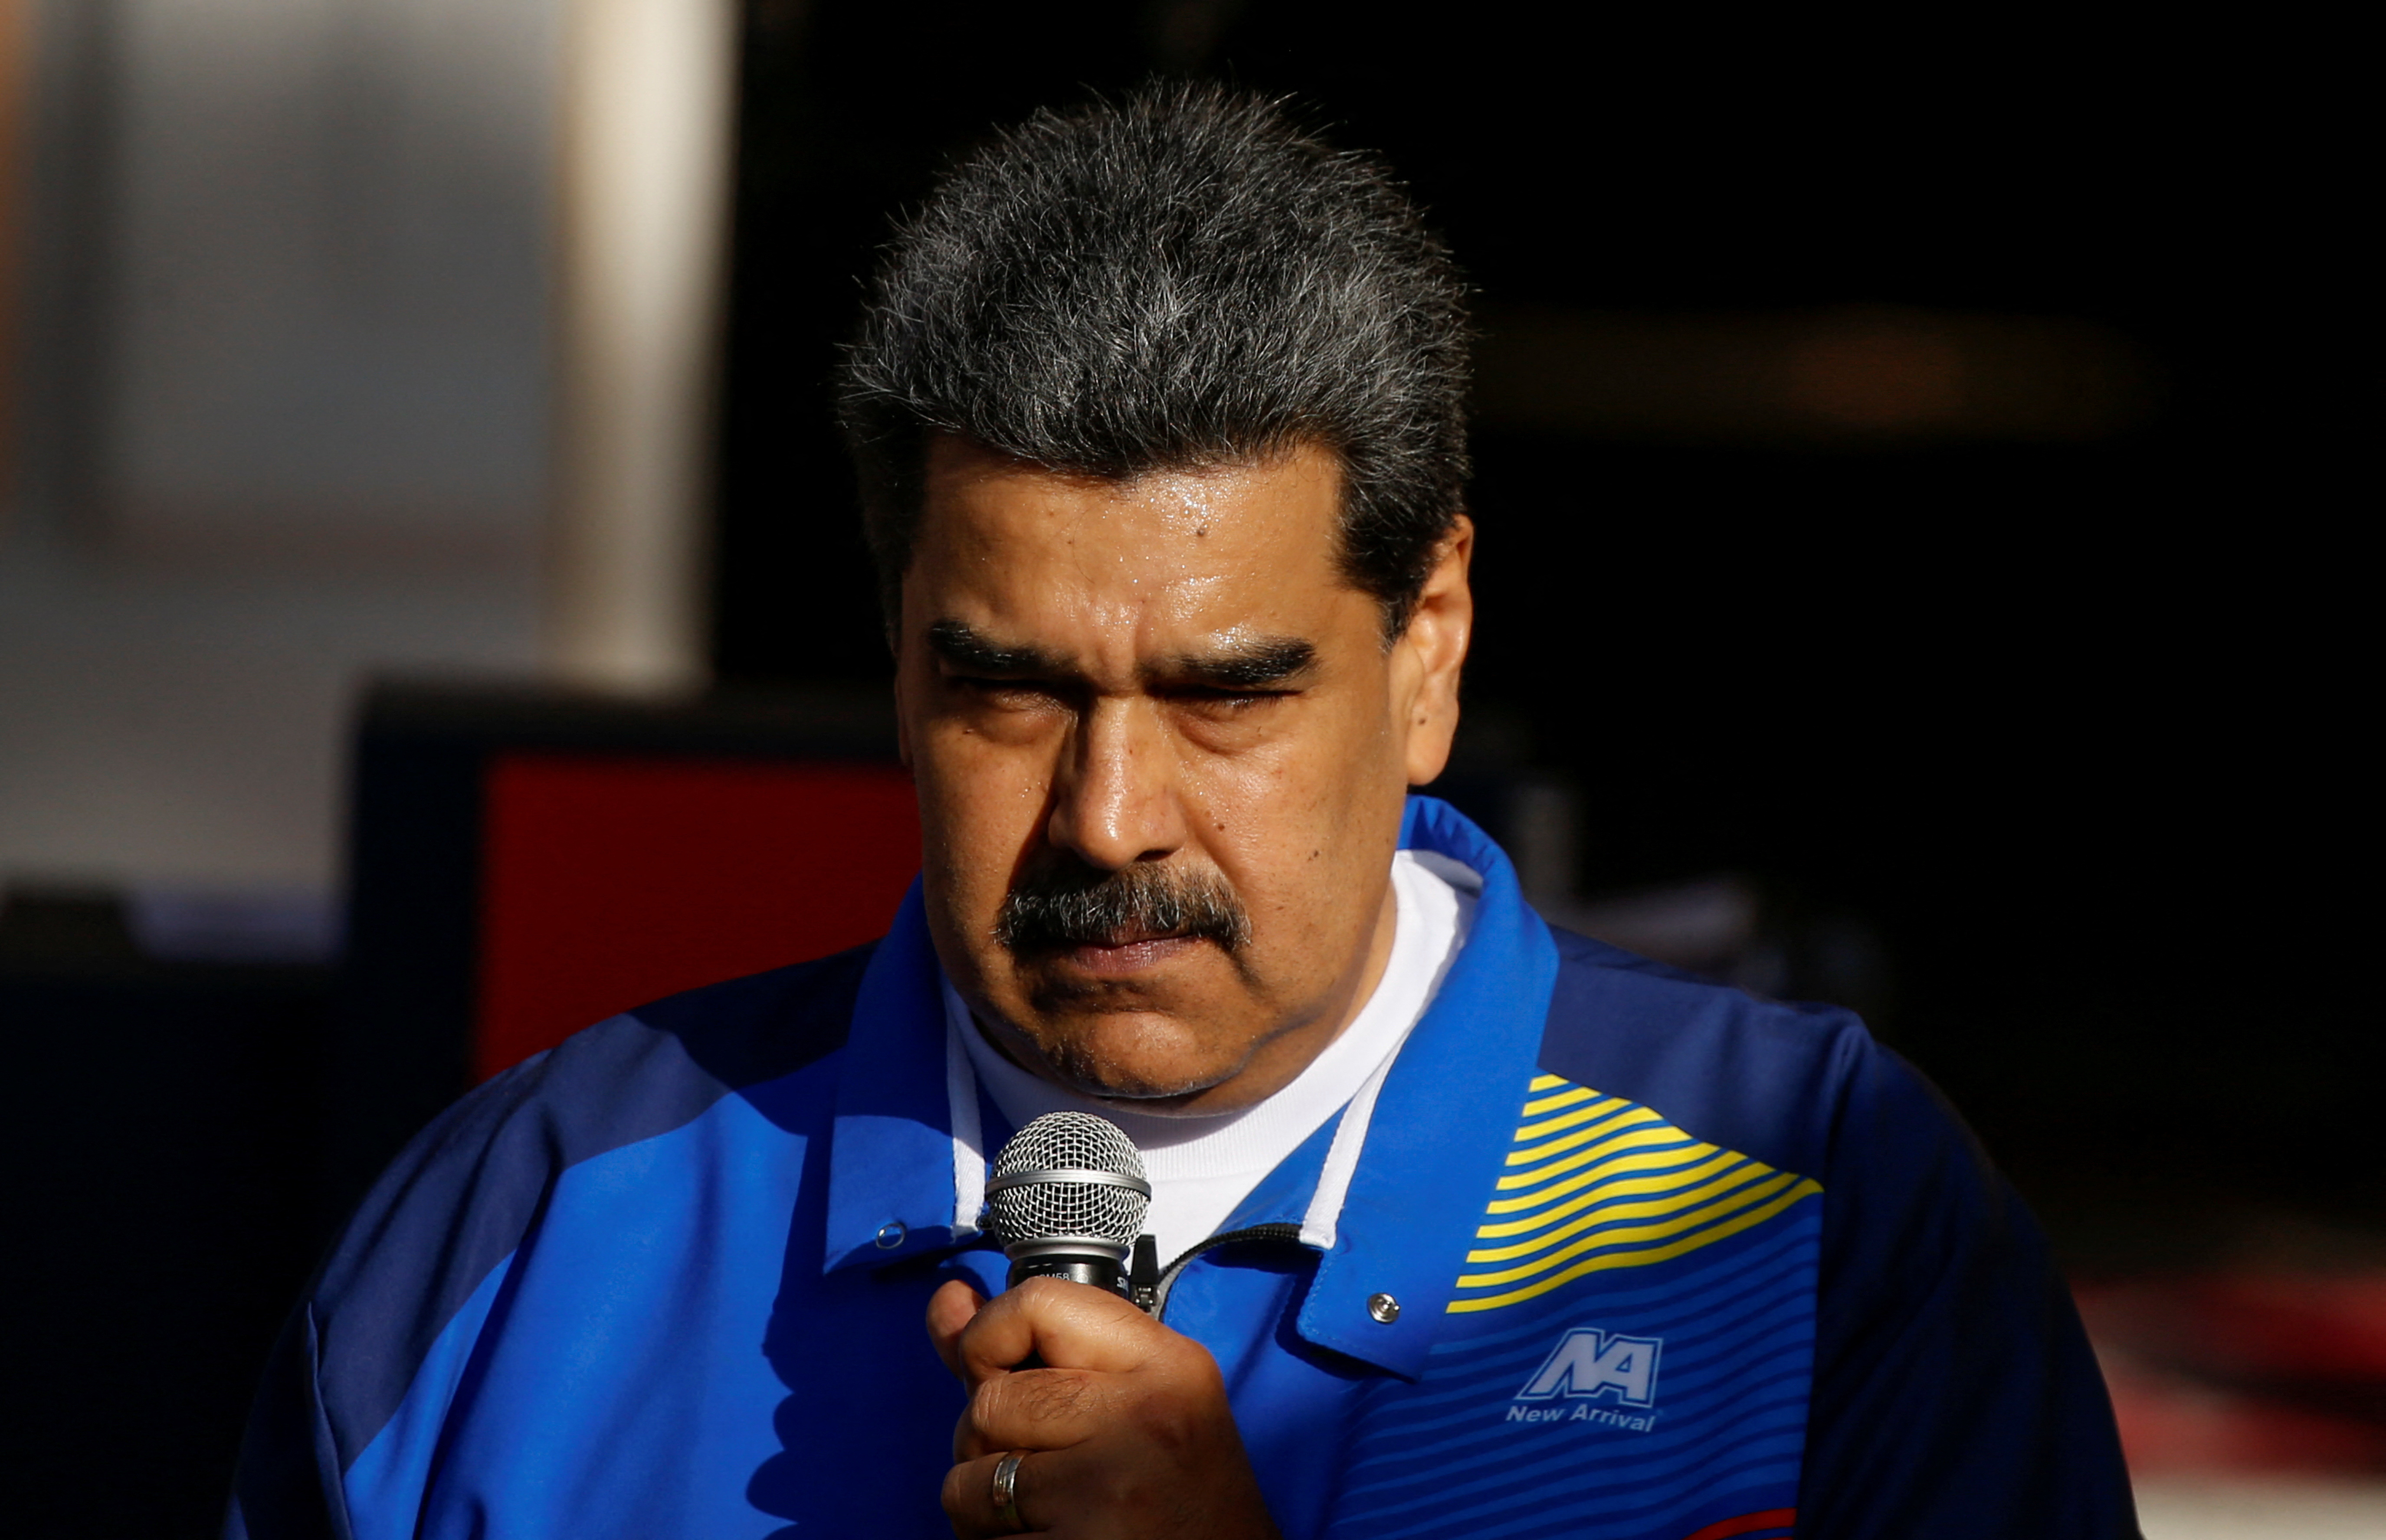 La crisis humanitaria de Venezuela será analizada por el Consejo de los DDHH de la ONU sin la participación del régimen de Maduro